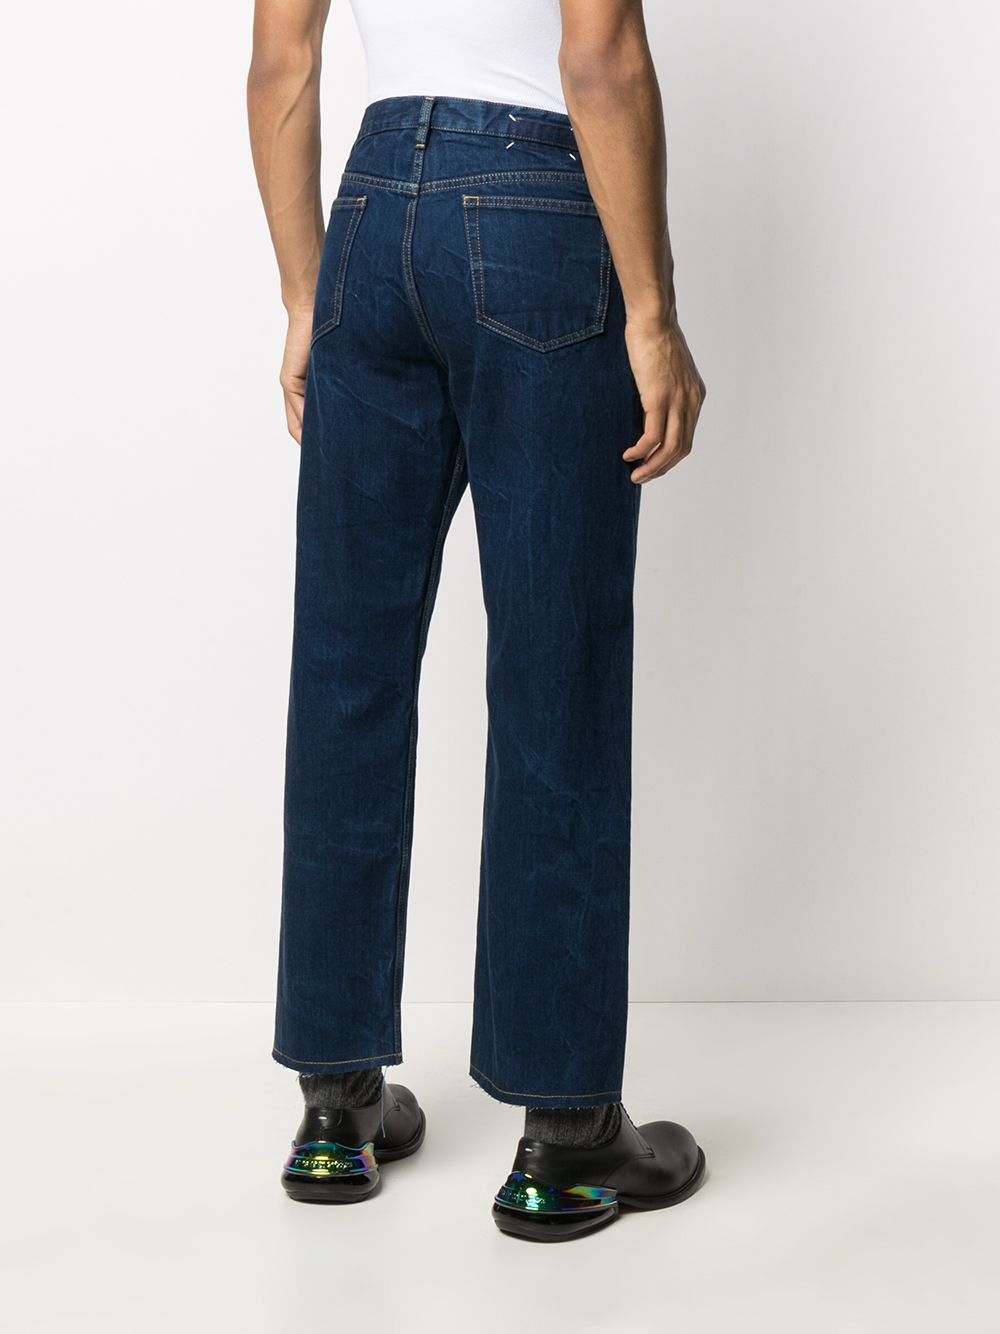 фото Maison margiela прямые джинсы с карманами